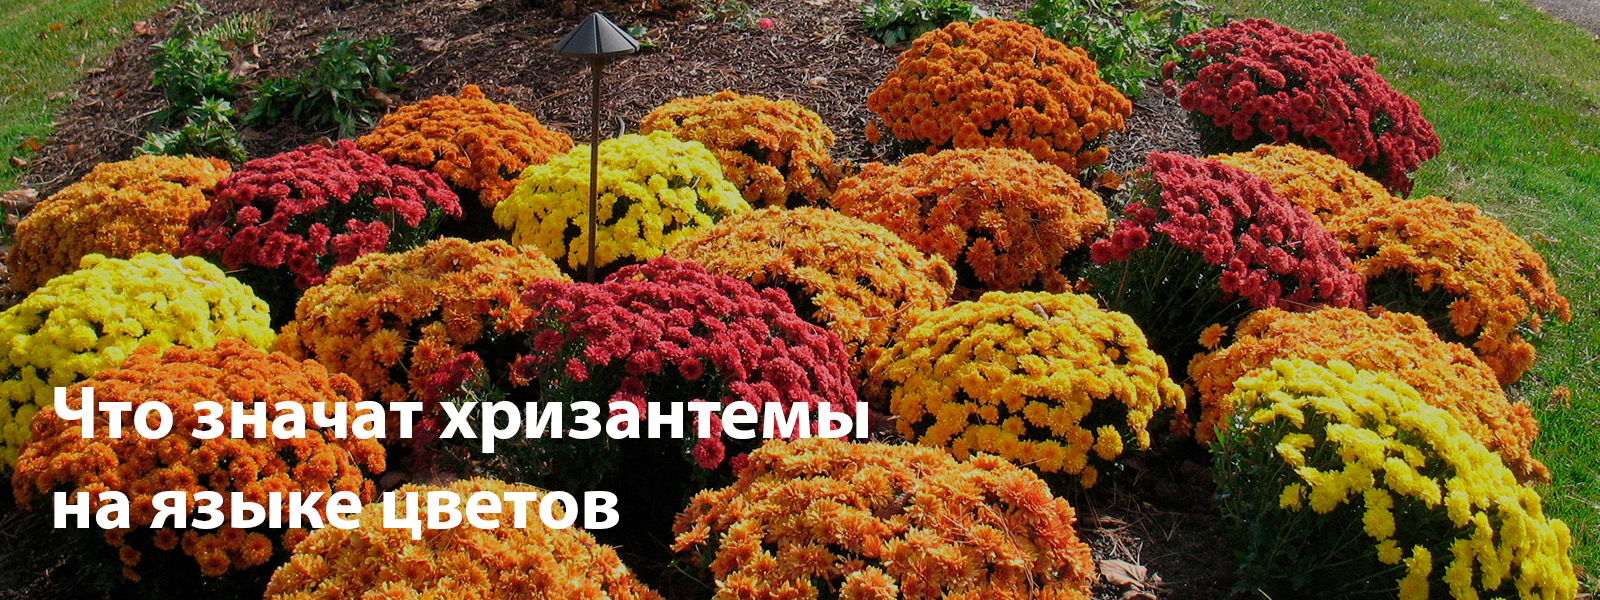 Что значат хризантемы на языке цветов